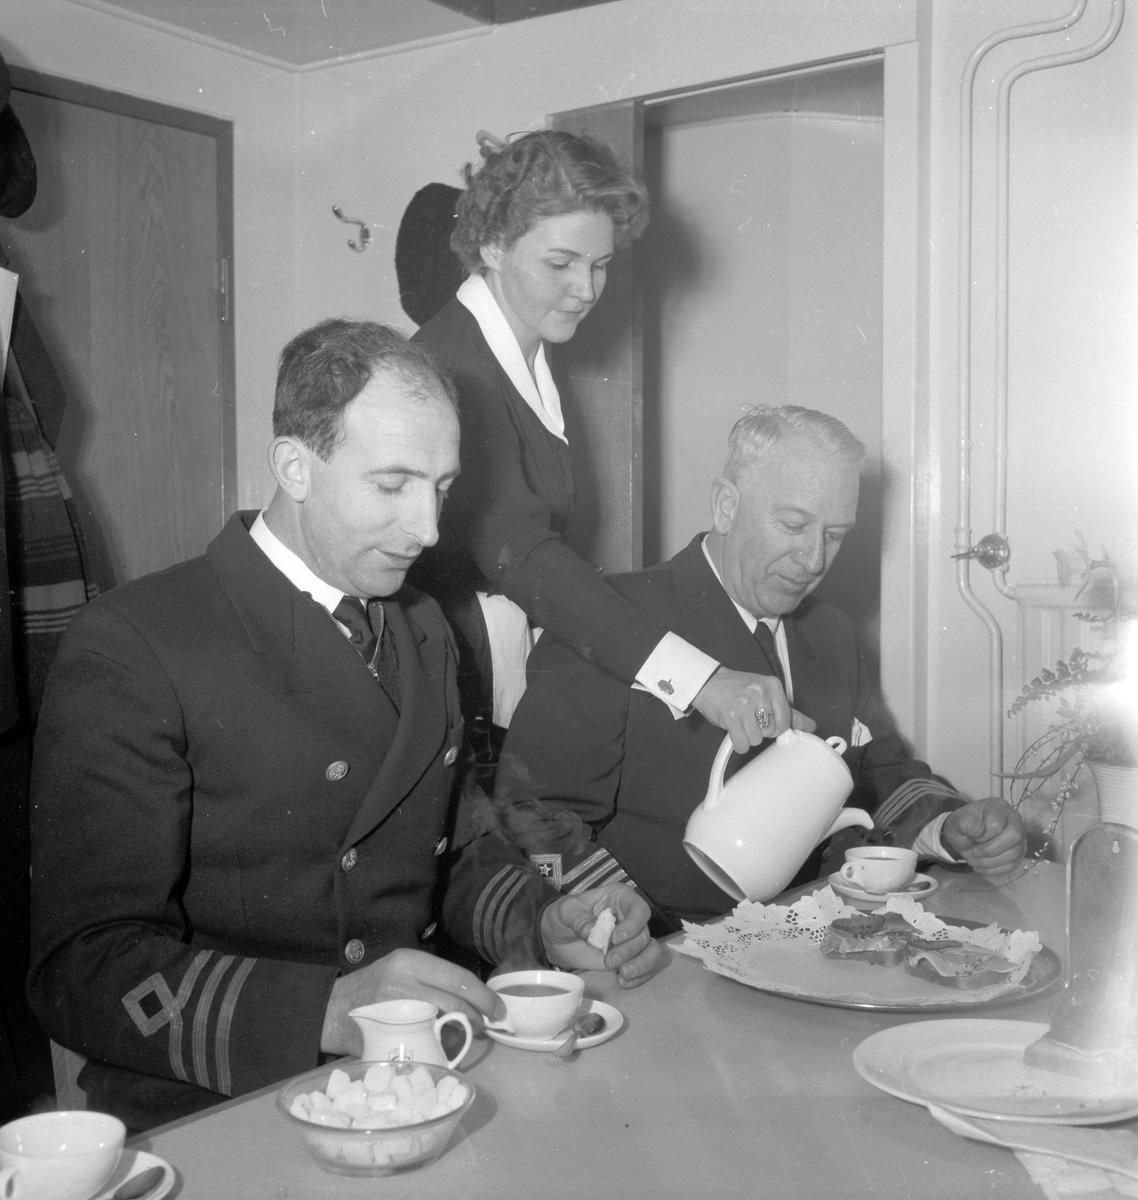 Den 27 januari 1954. Provtur med båten M/S Lombardia. Kaffeservering

